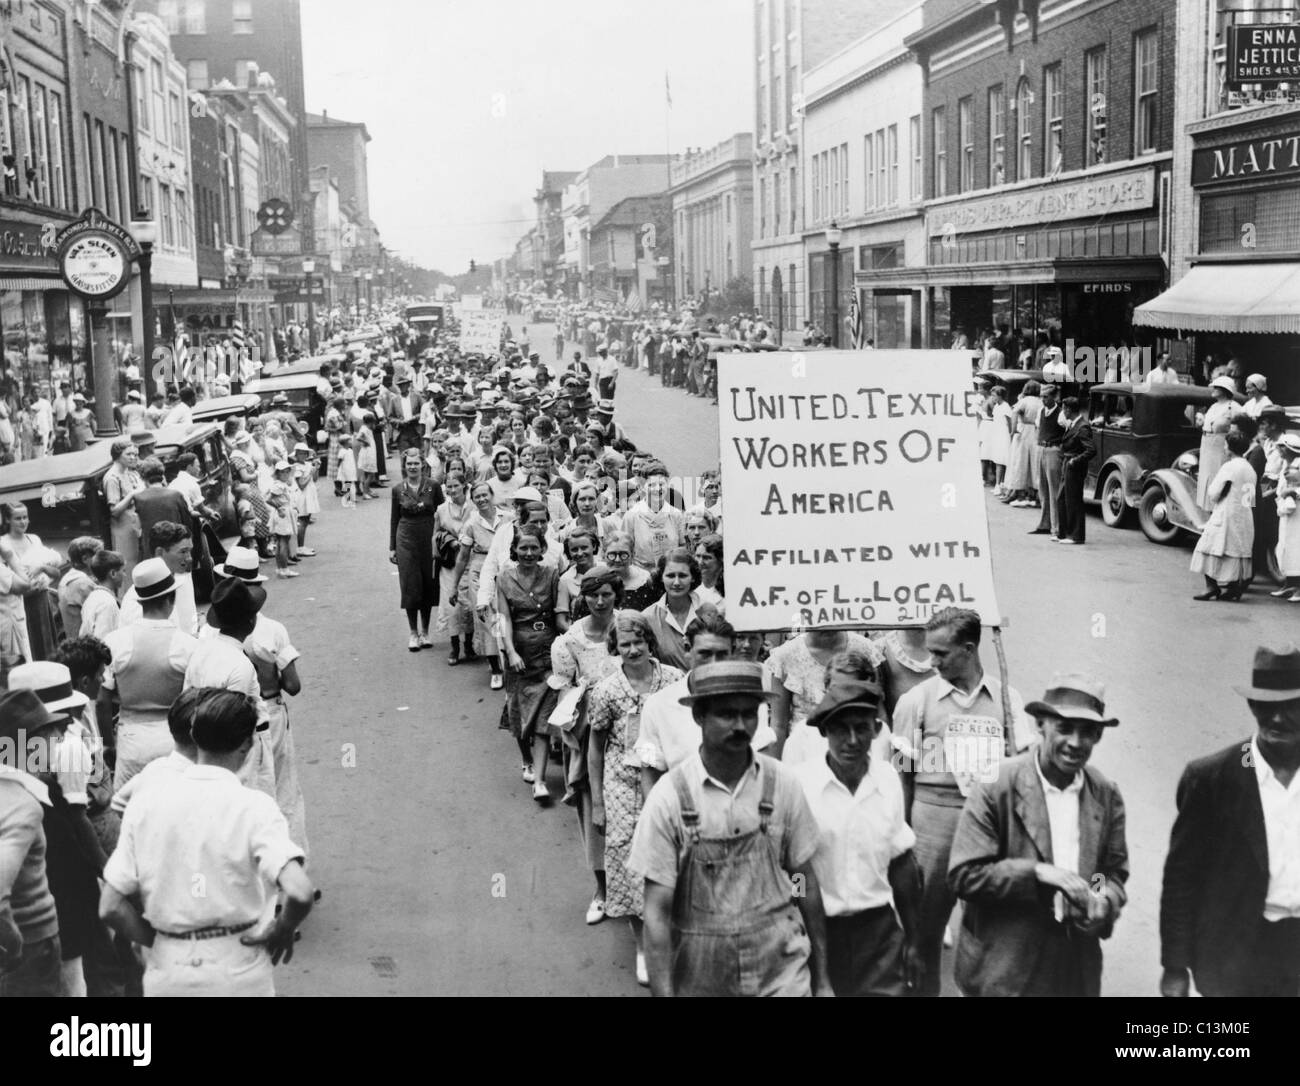 Markanten südlichen Textilarbeiter feiern Labor Day mit einer Parade und melden Sie kündigt ihre Zugehörigkeit mit der American Federation of Labor in 1934. Gastonia, North Carolina. Stockfoto